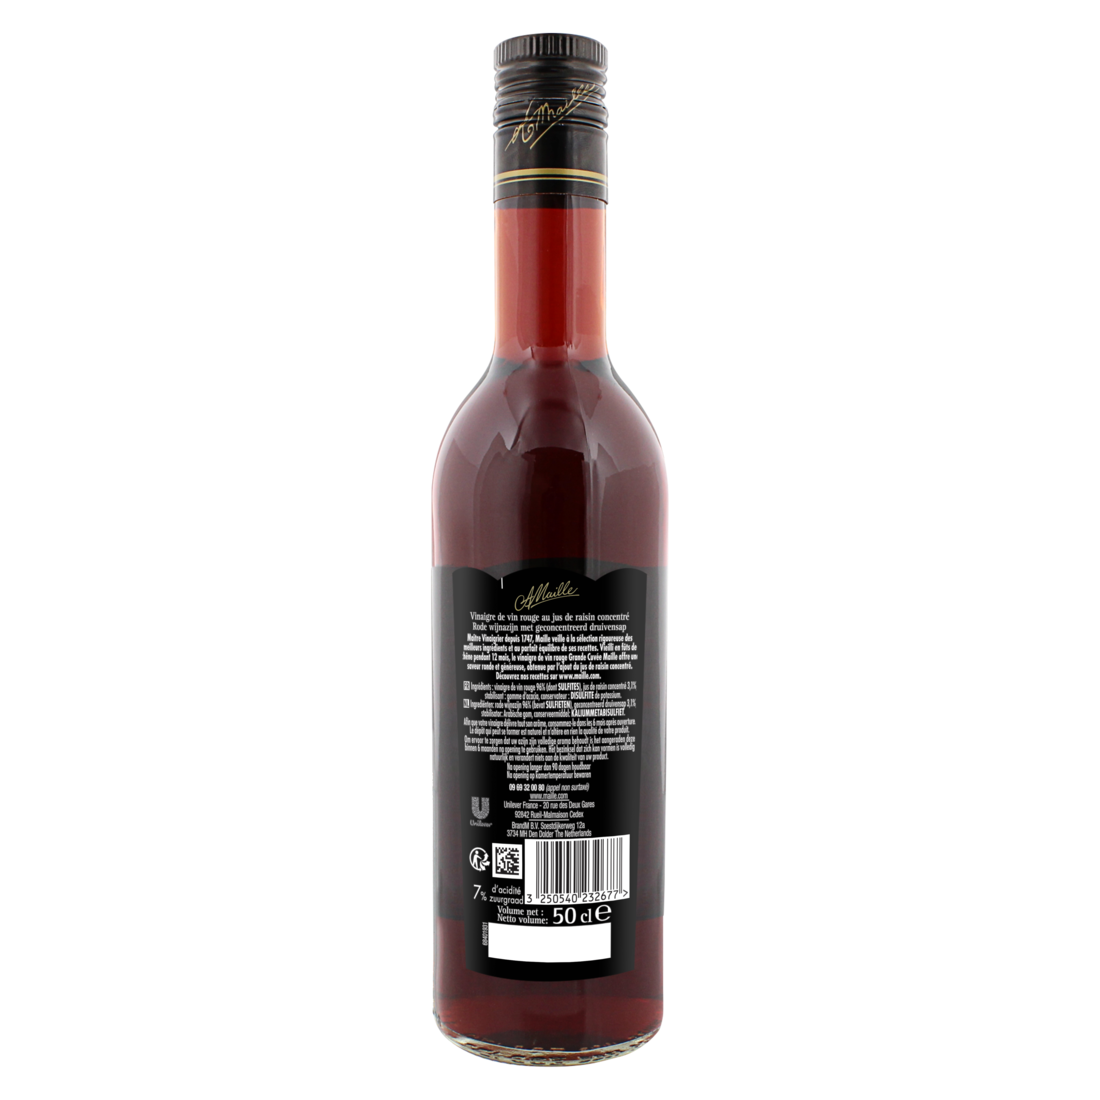 Maille - Vinaigre de Vin Rouge adouci au jus de raisin concentré 50 cl, backend